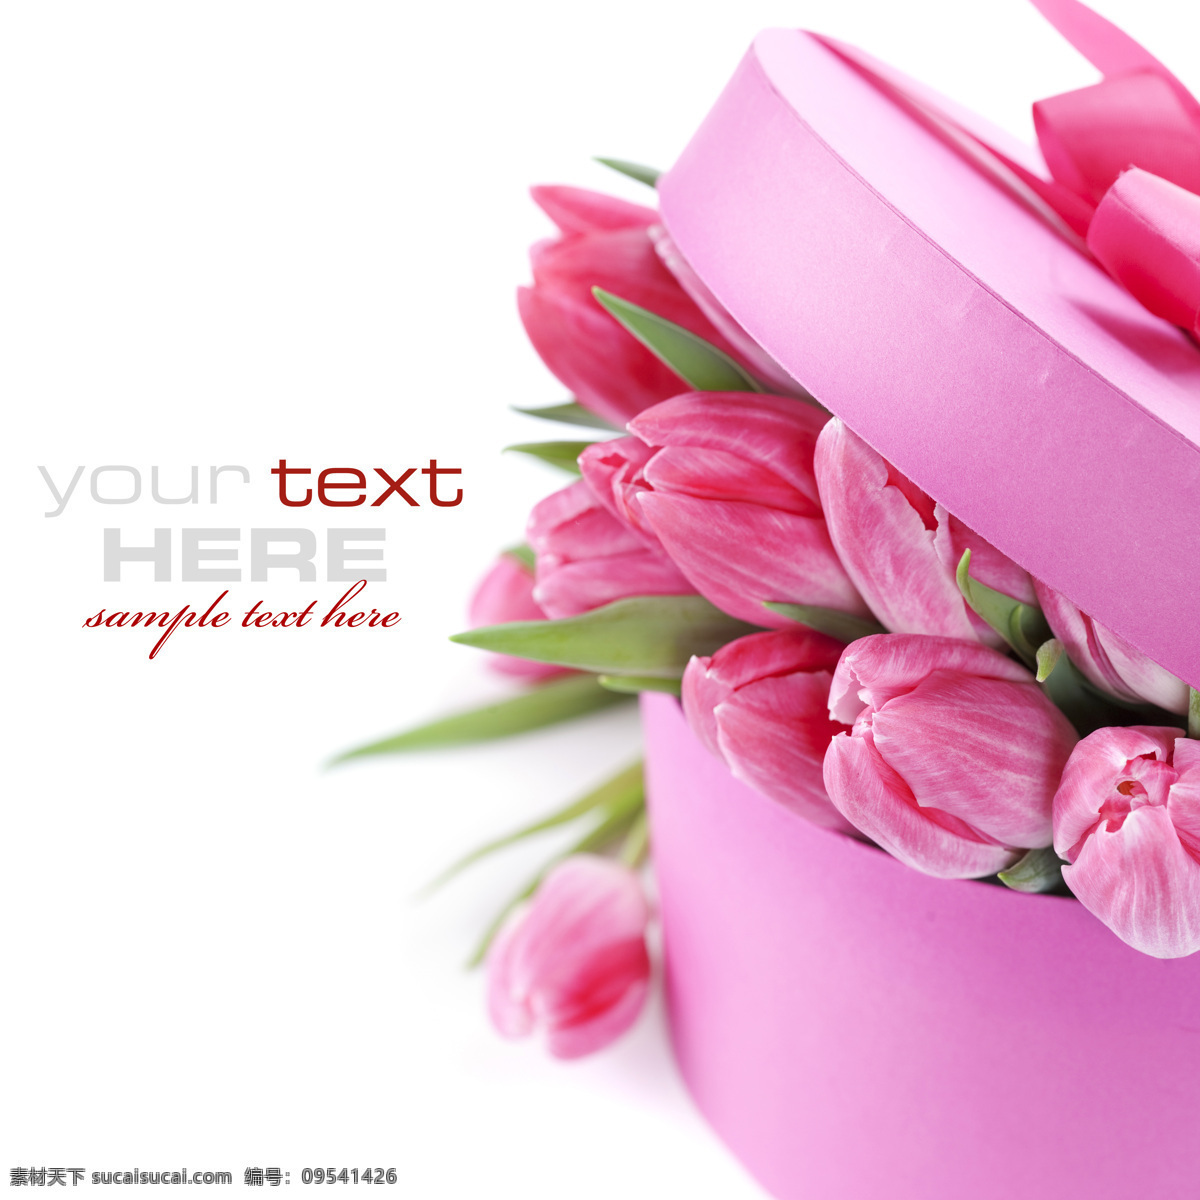 装 礼盒 里 鲜花 植物 高贵 典雅 新鲜 粉色礼盒 郁金香 花草树木 生物世界